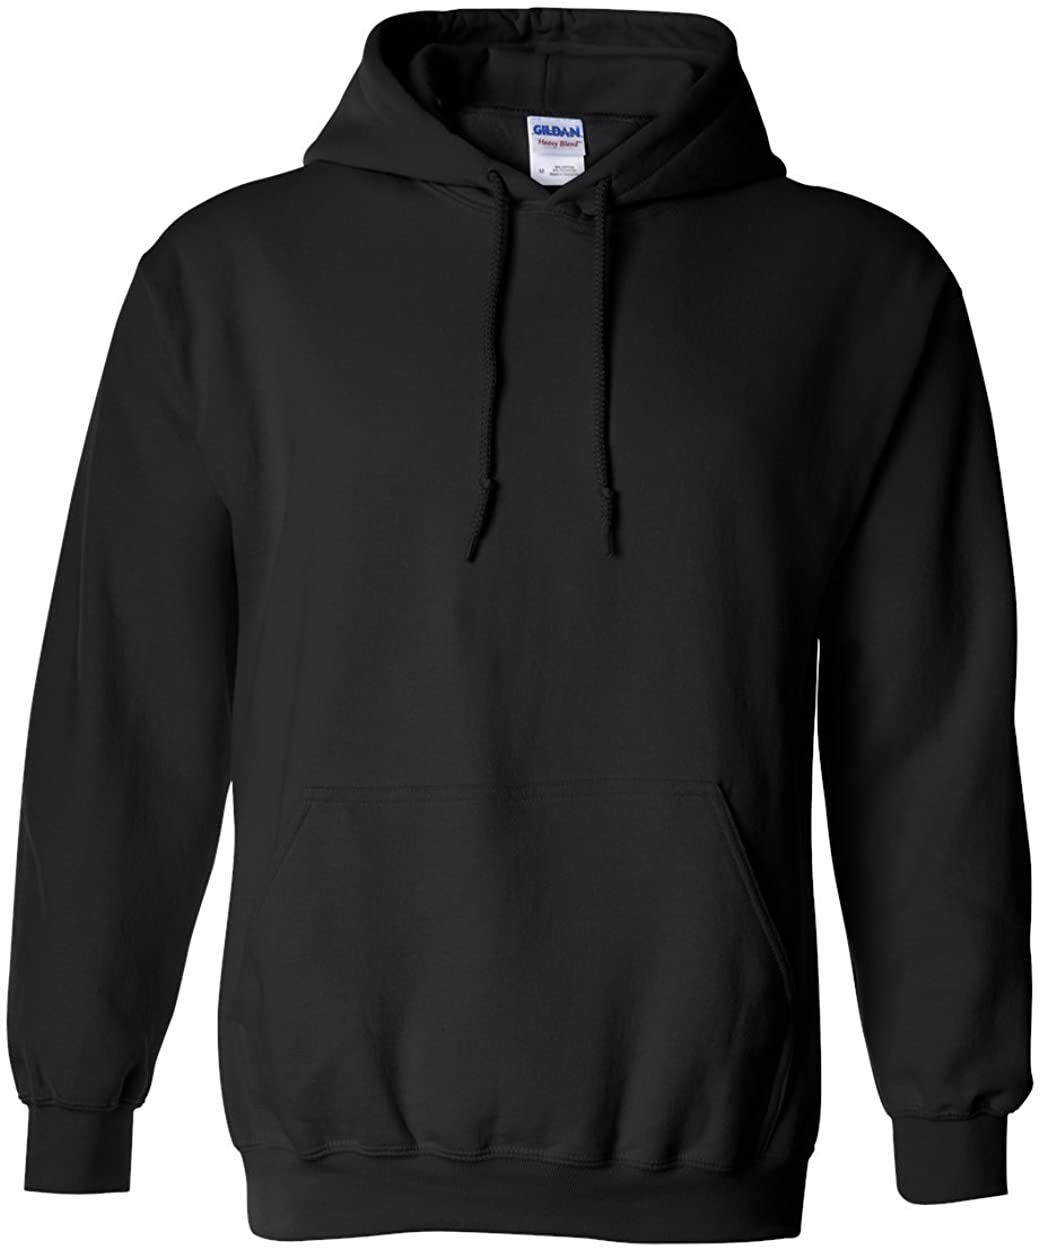 WB221 Hooded Sweatshirt Design by Wyatt B G185